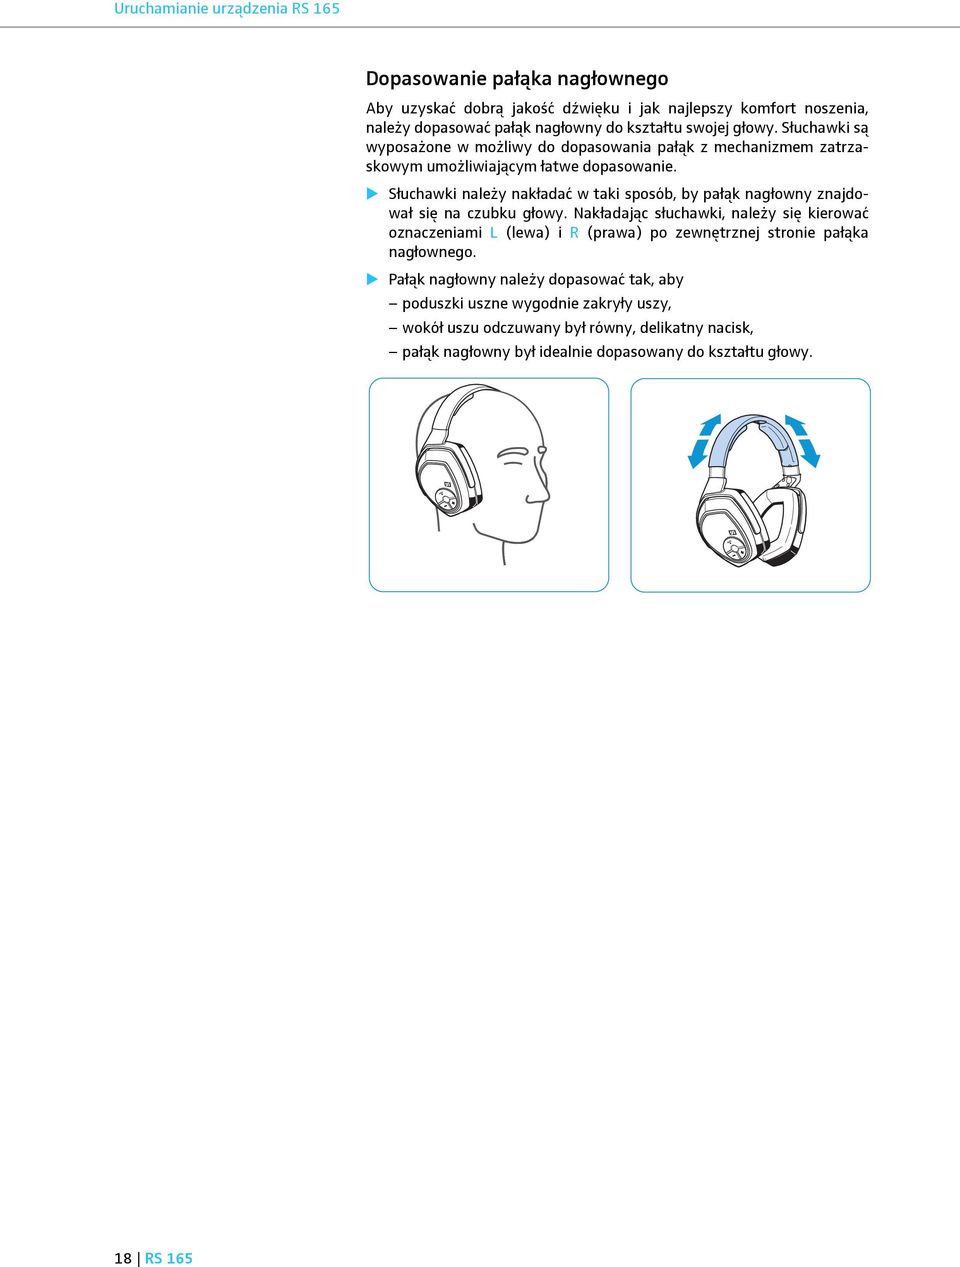 Słuchawki należy nakładać w taki sposób, by pałąk nagłowny znajdował się na czubku głowy.